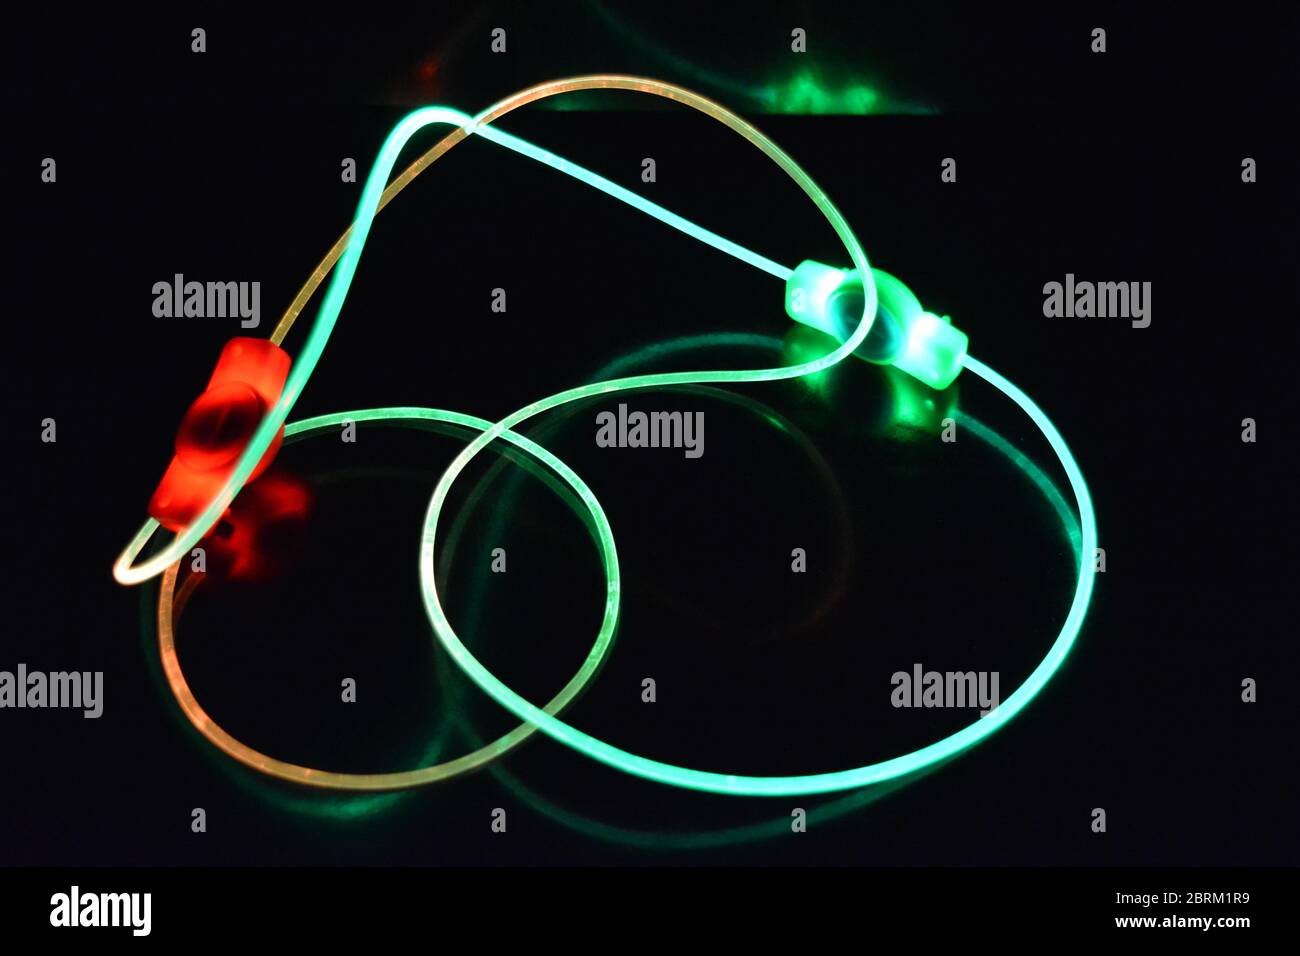 Filo con luce verde e rossa, un filo guida con trasmissione della luce diversa, spettro luminoso ed effetti luminosi situati in uno stato caotico. Foto Stock